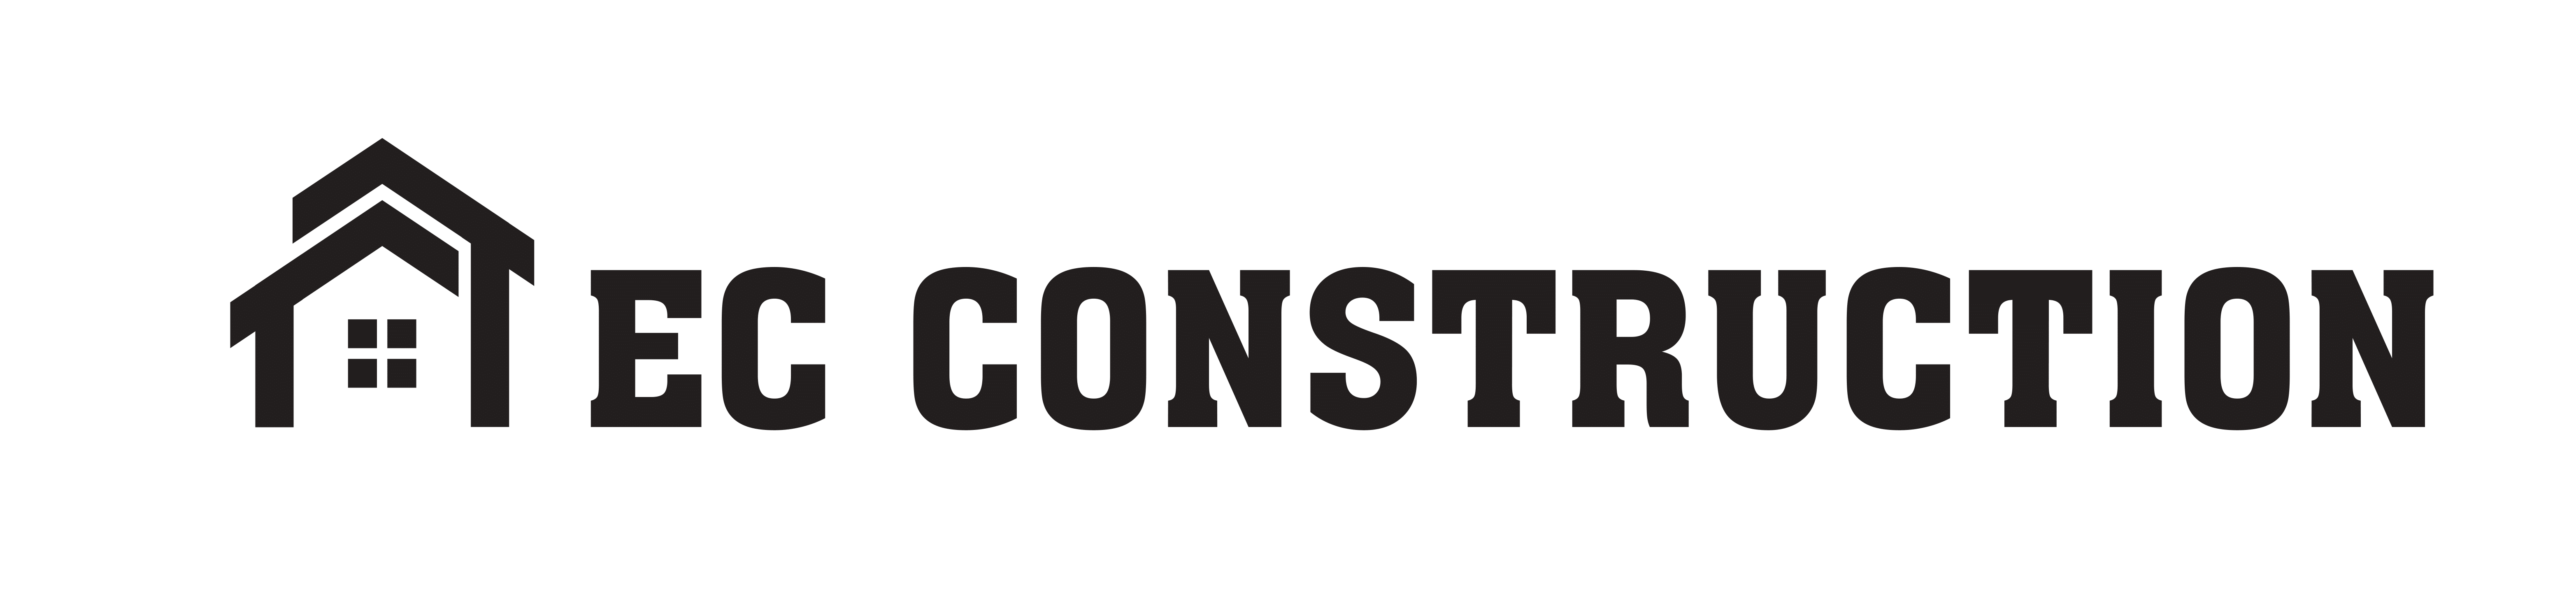 EC Construction, Inc